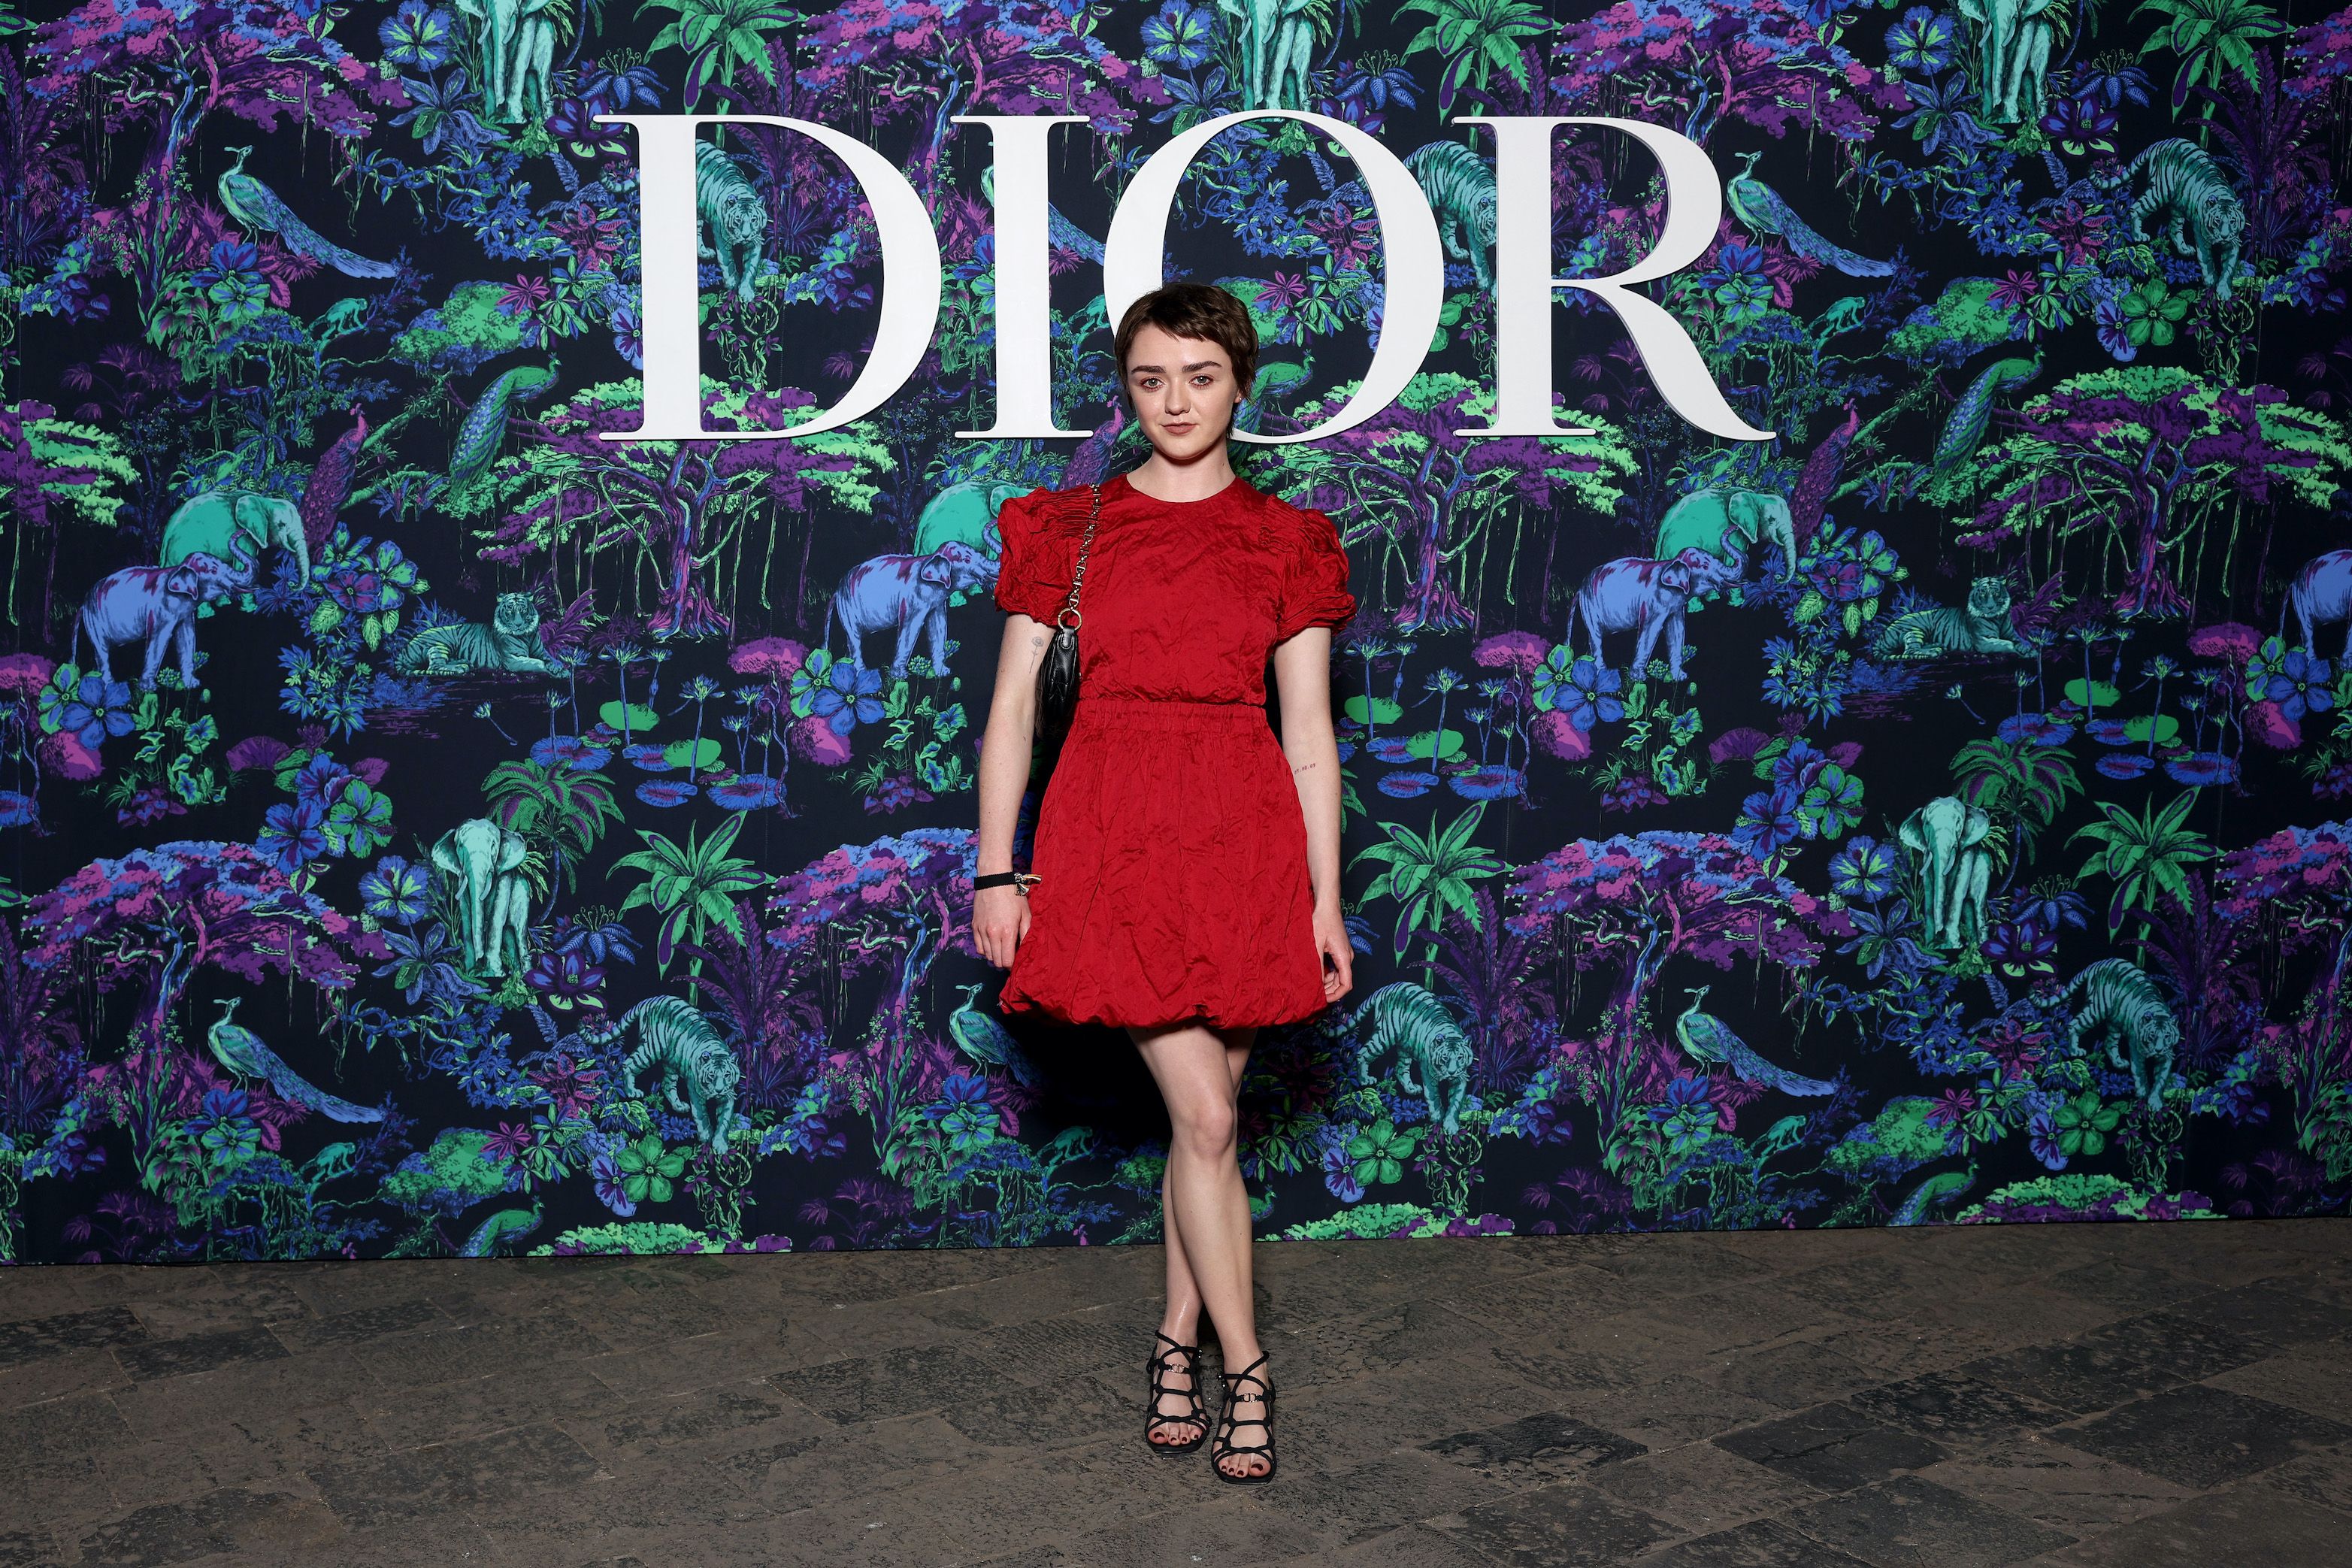 Dior Short Hills Has New Look